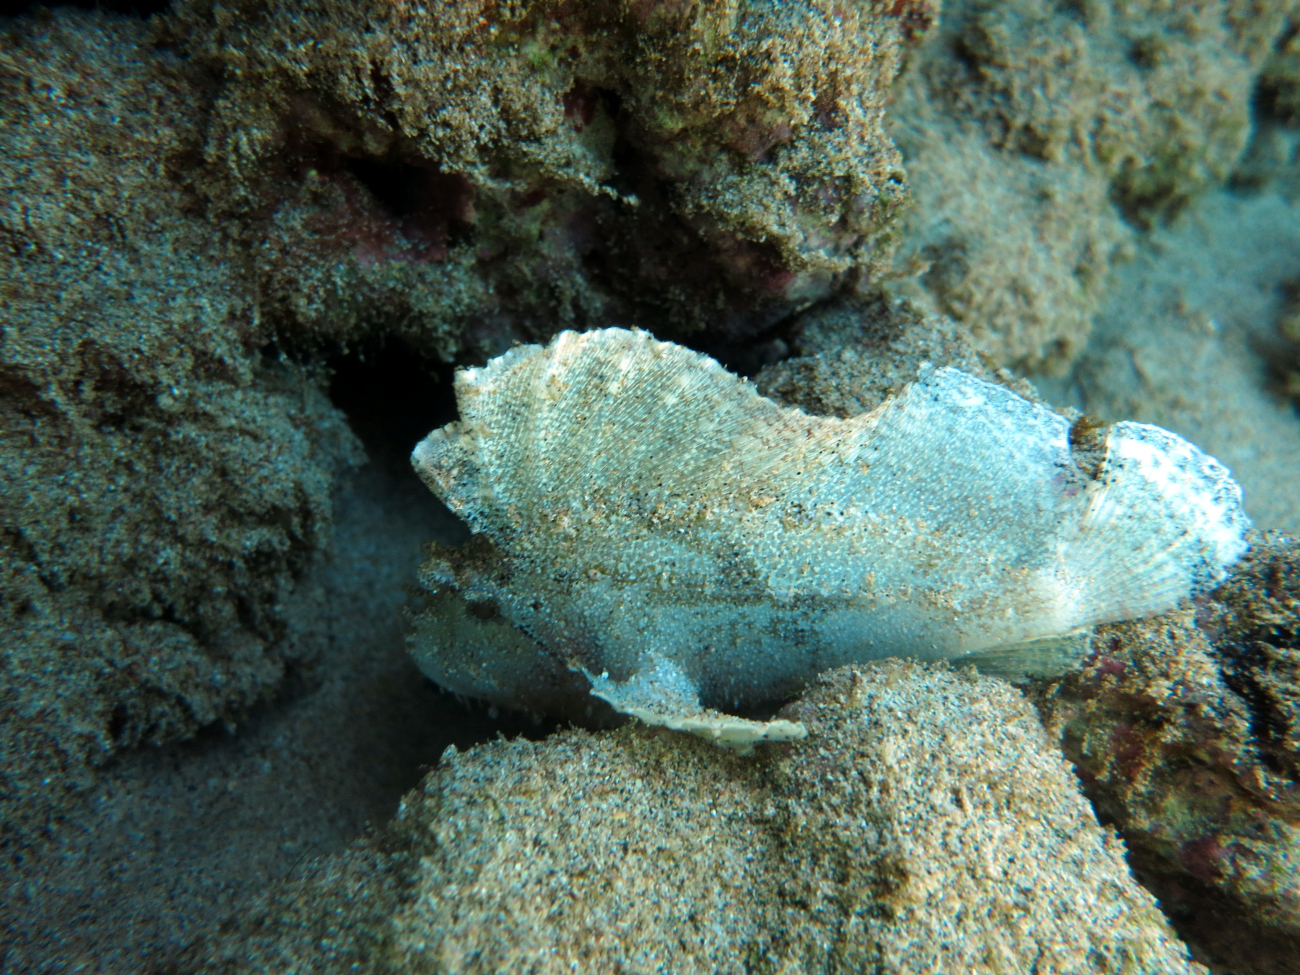 Leaf scorpionfish (Taenianotus triacanthus)